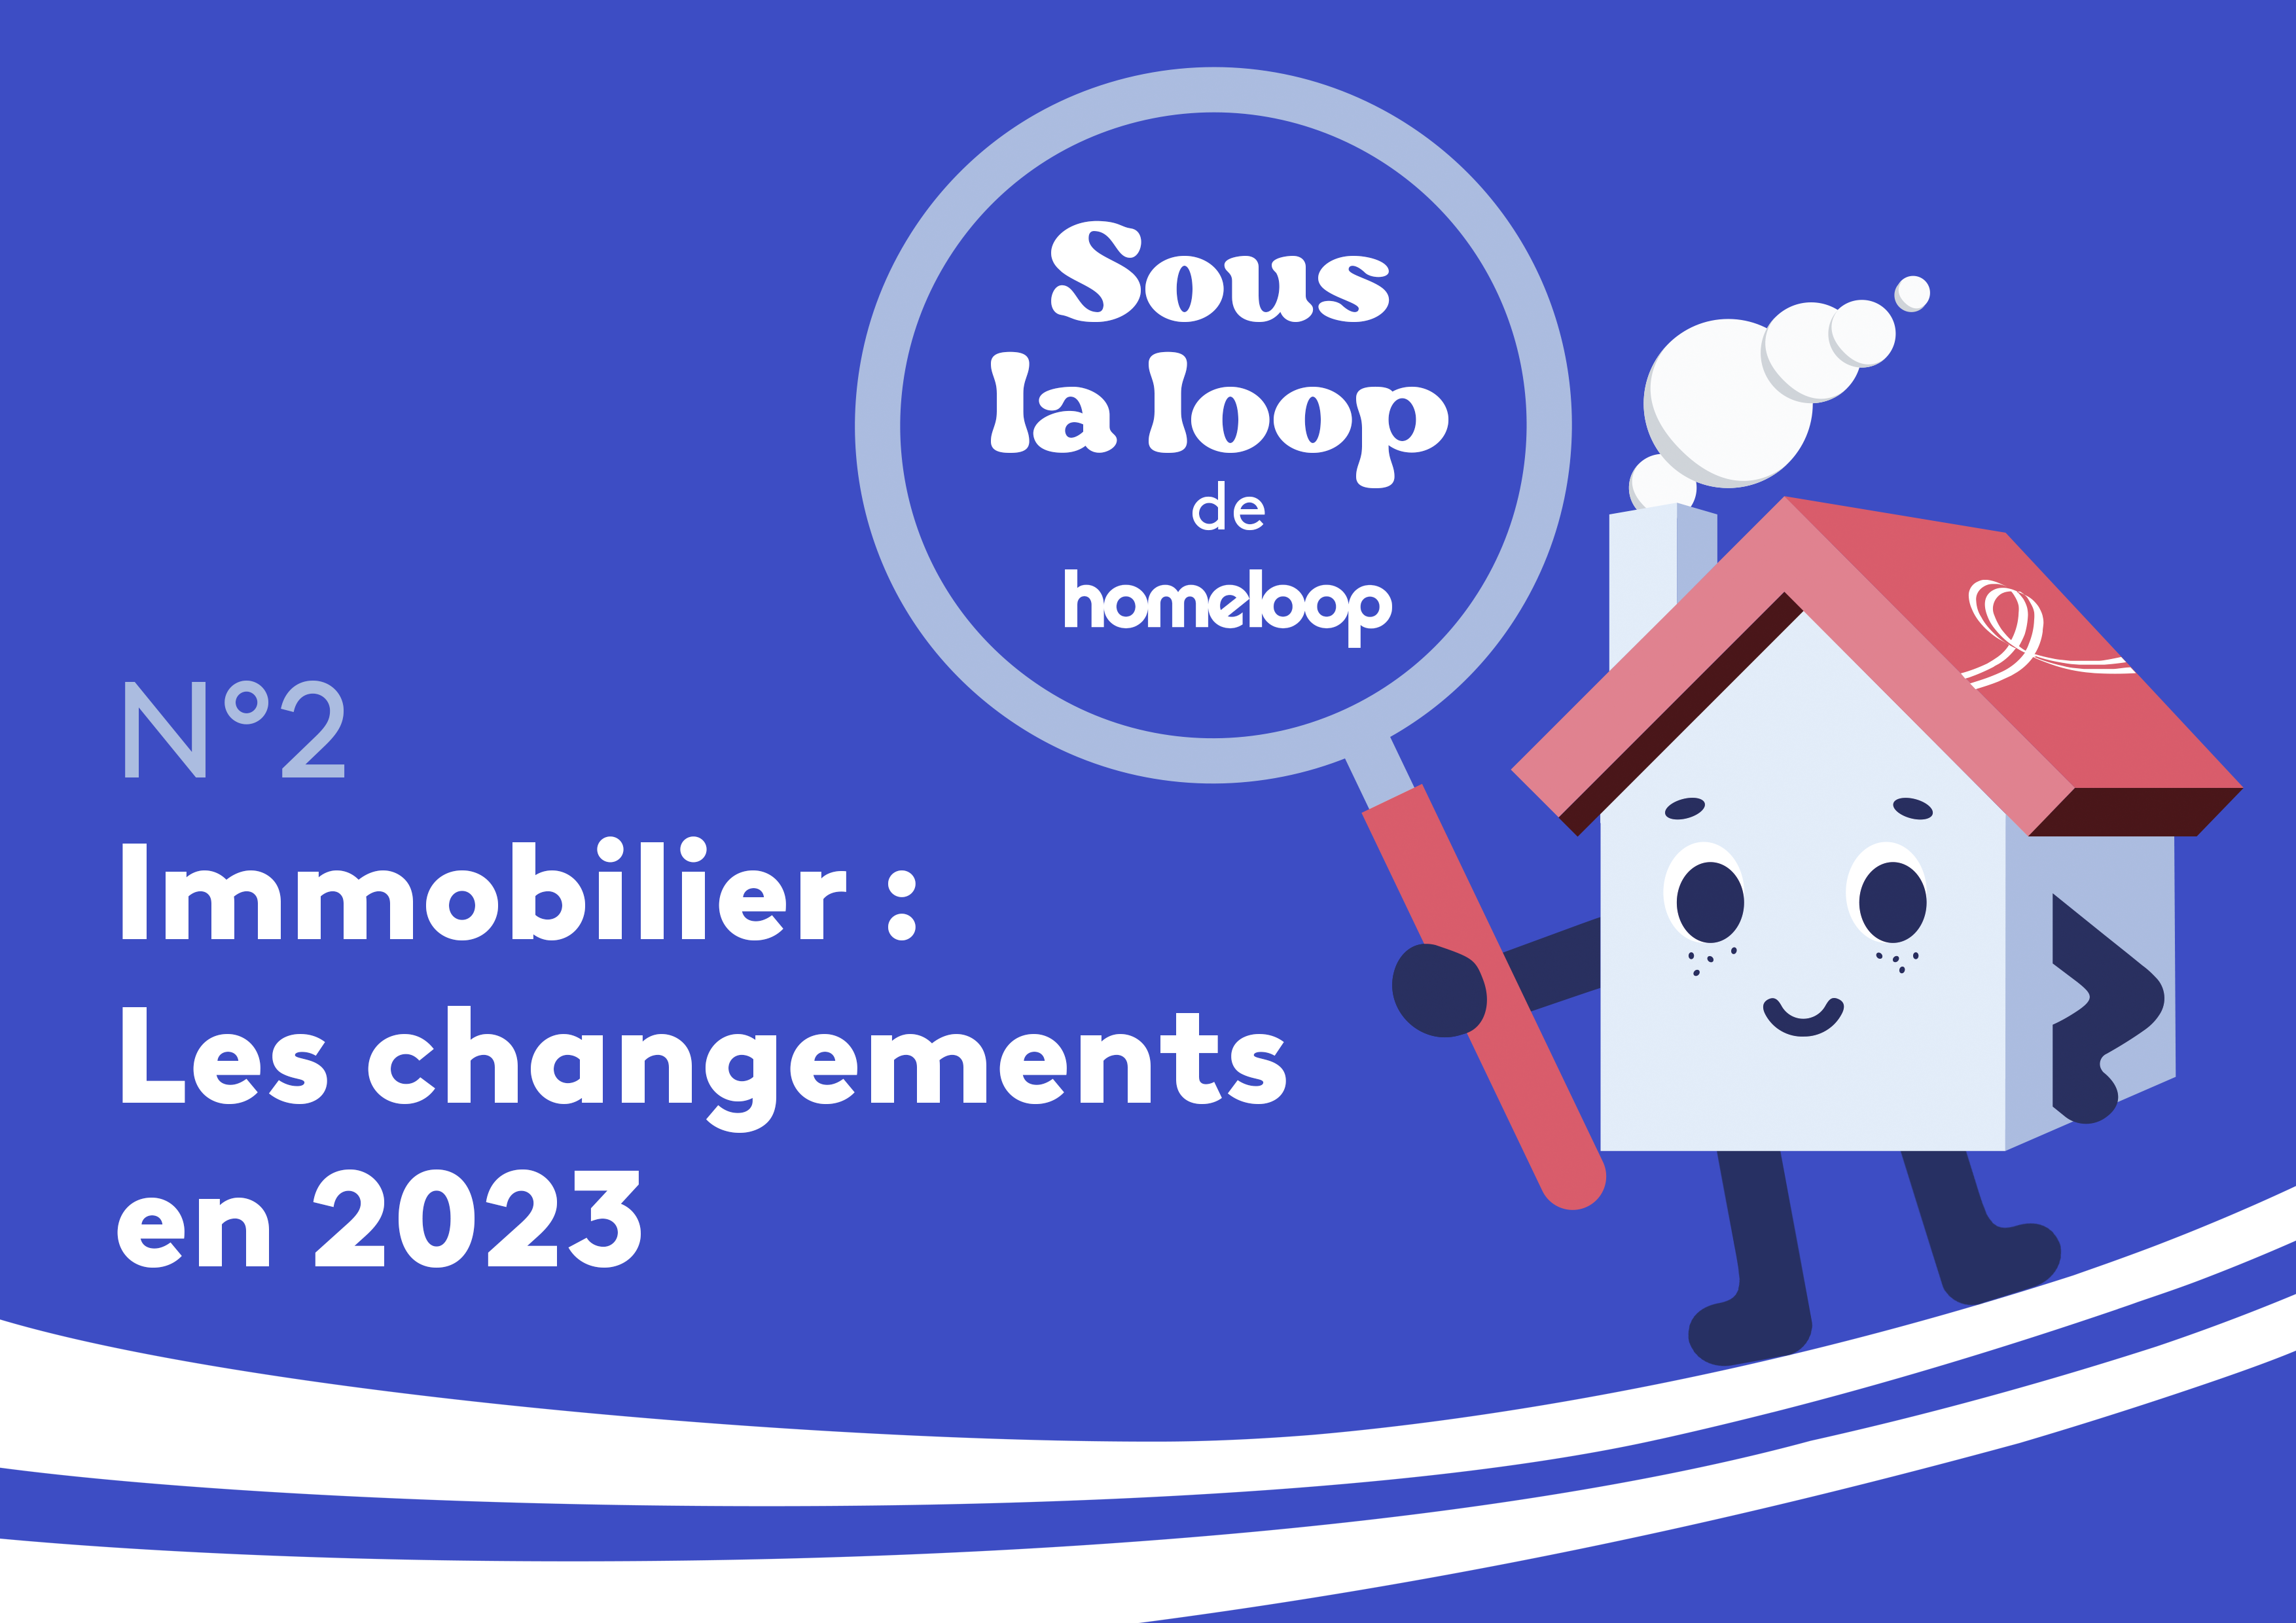 Sous la loop : Immobilier &#8211; les changements en 2023